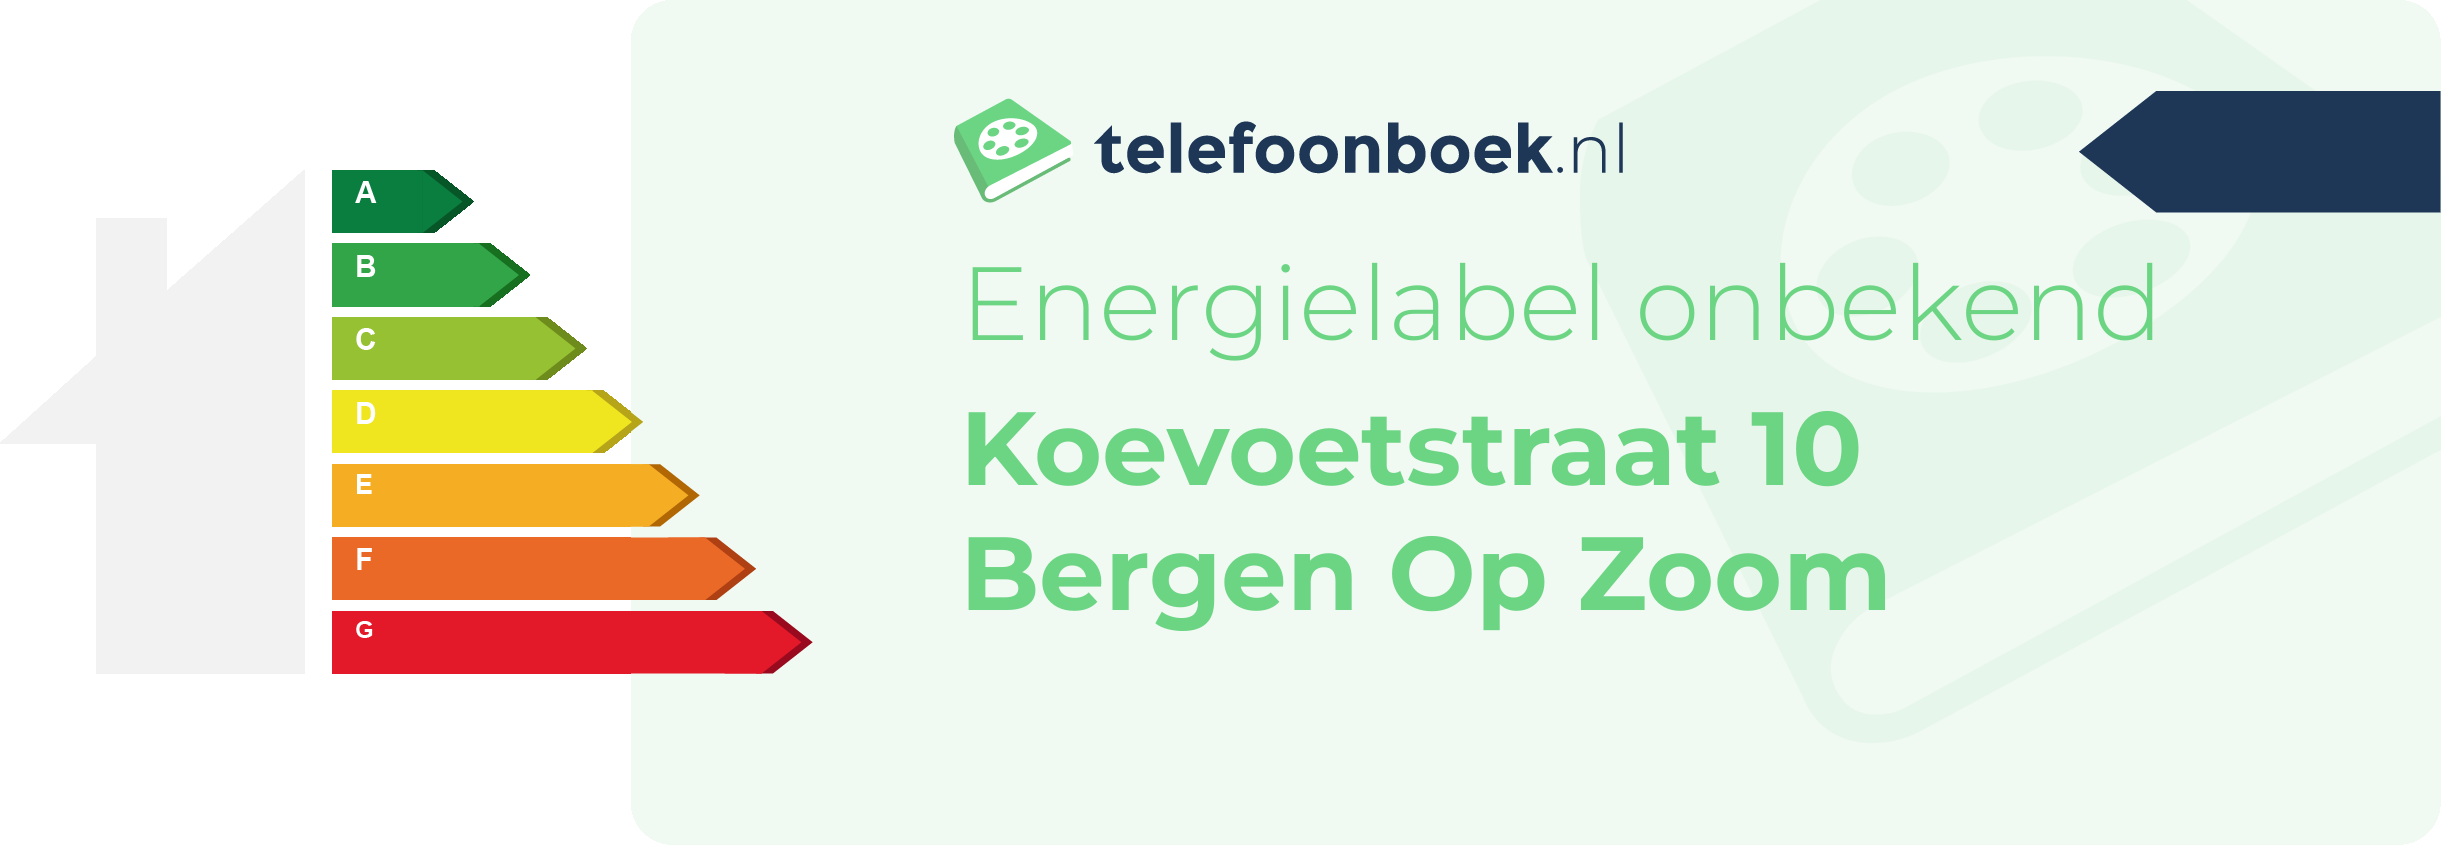 Energielabel Koevoetstraat 10 Bergen Op Zoom